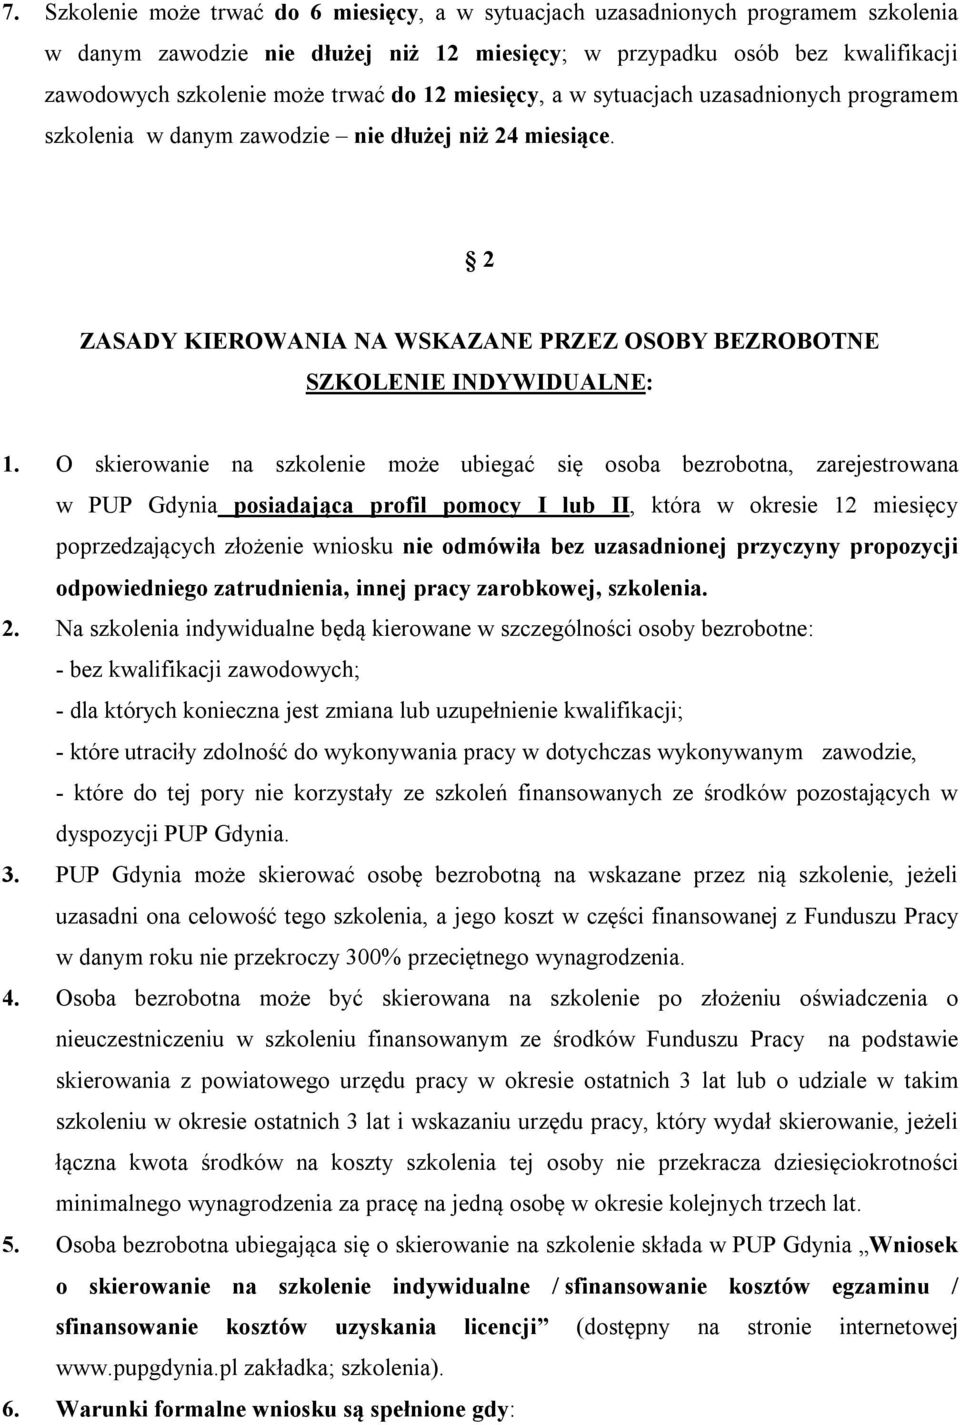 O skierowanie na szkolenie może ubiegać się osoba bezrobotna, zarejestrowana w PUP Gdynia posiadająca profil pomocy I lub II, która w okresie 12 miesięcy poprzedzających złożenie wniosku nie odmówiła